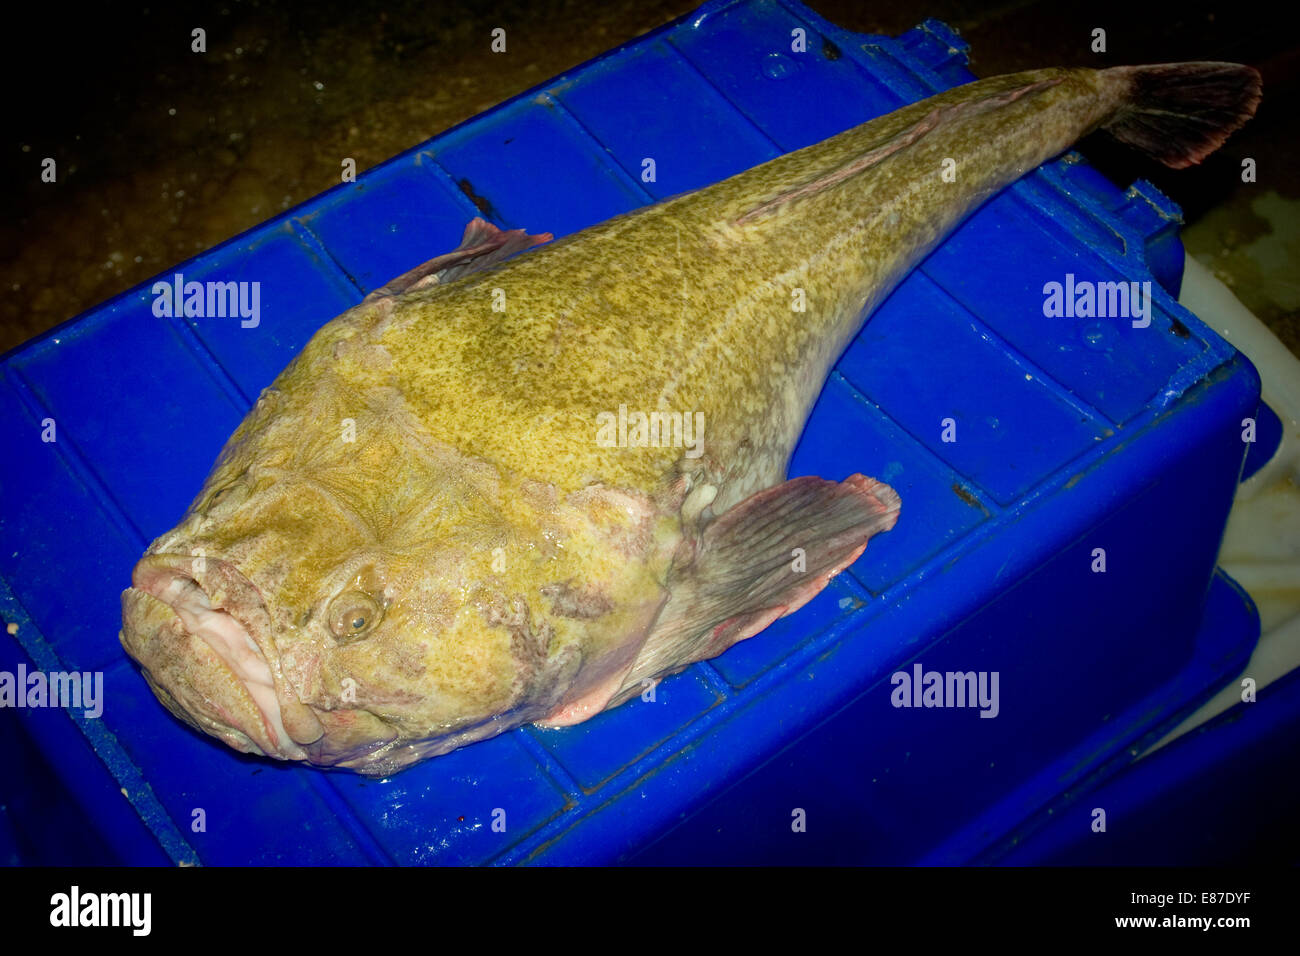 Monkfish, Giant Stargazer (Kathetostoma giganteum) of the family Uranoscopidae Stock Photo